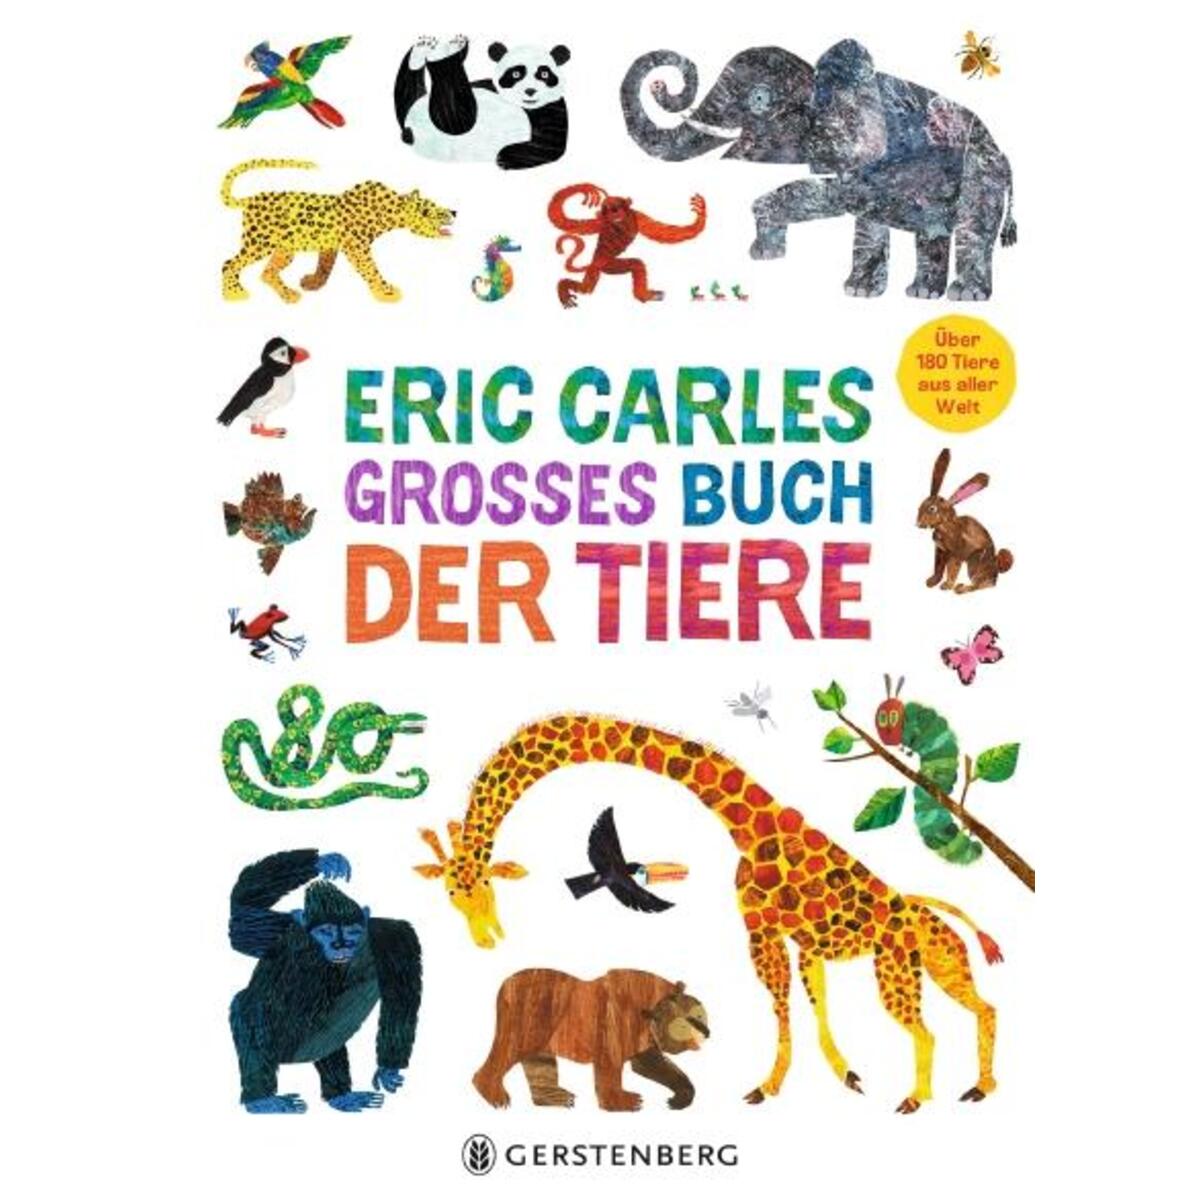 Eric Carles großes Buch der Tiere von Gerstenberg Verlag